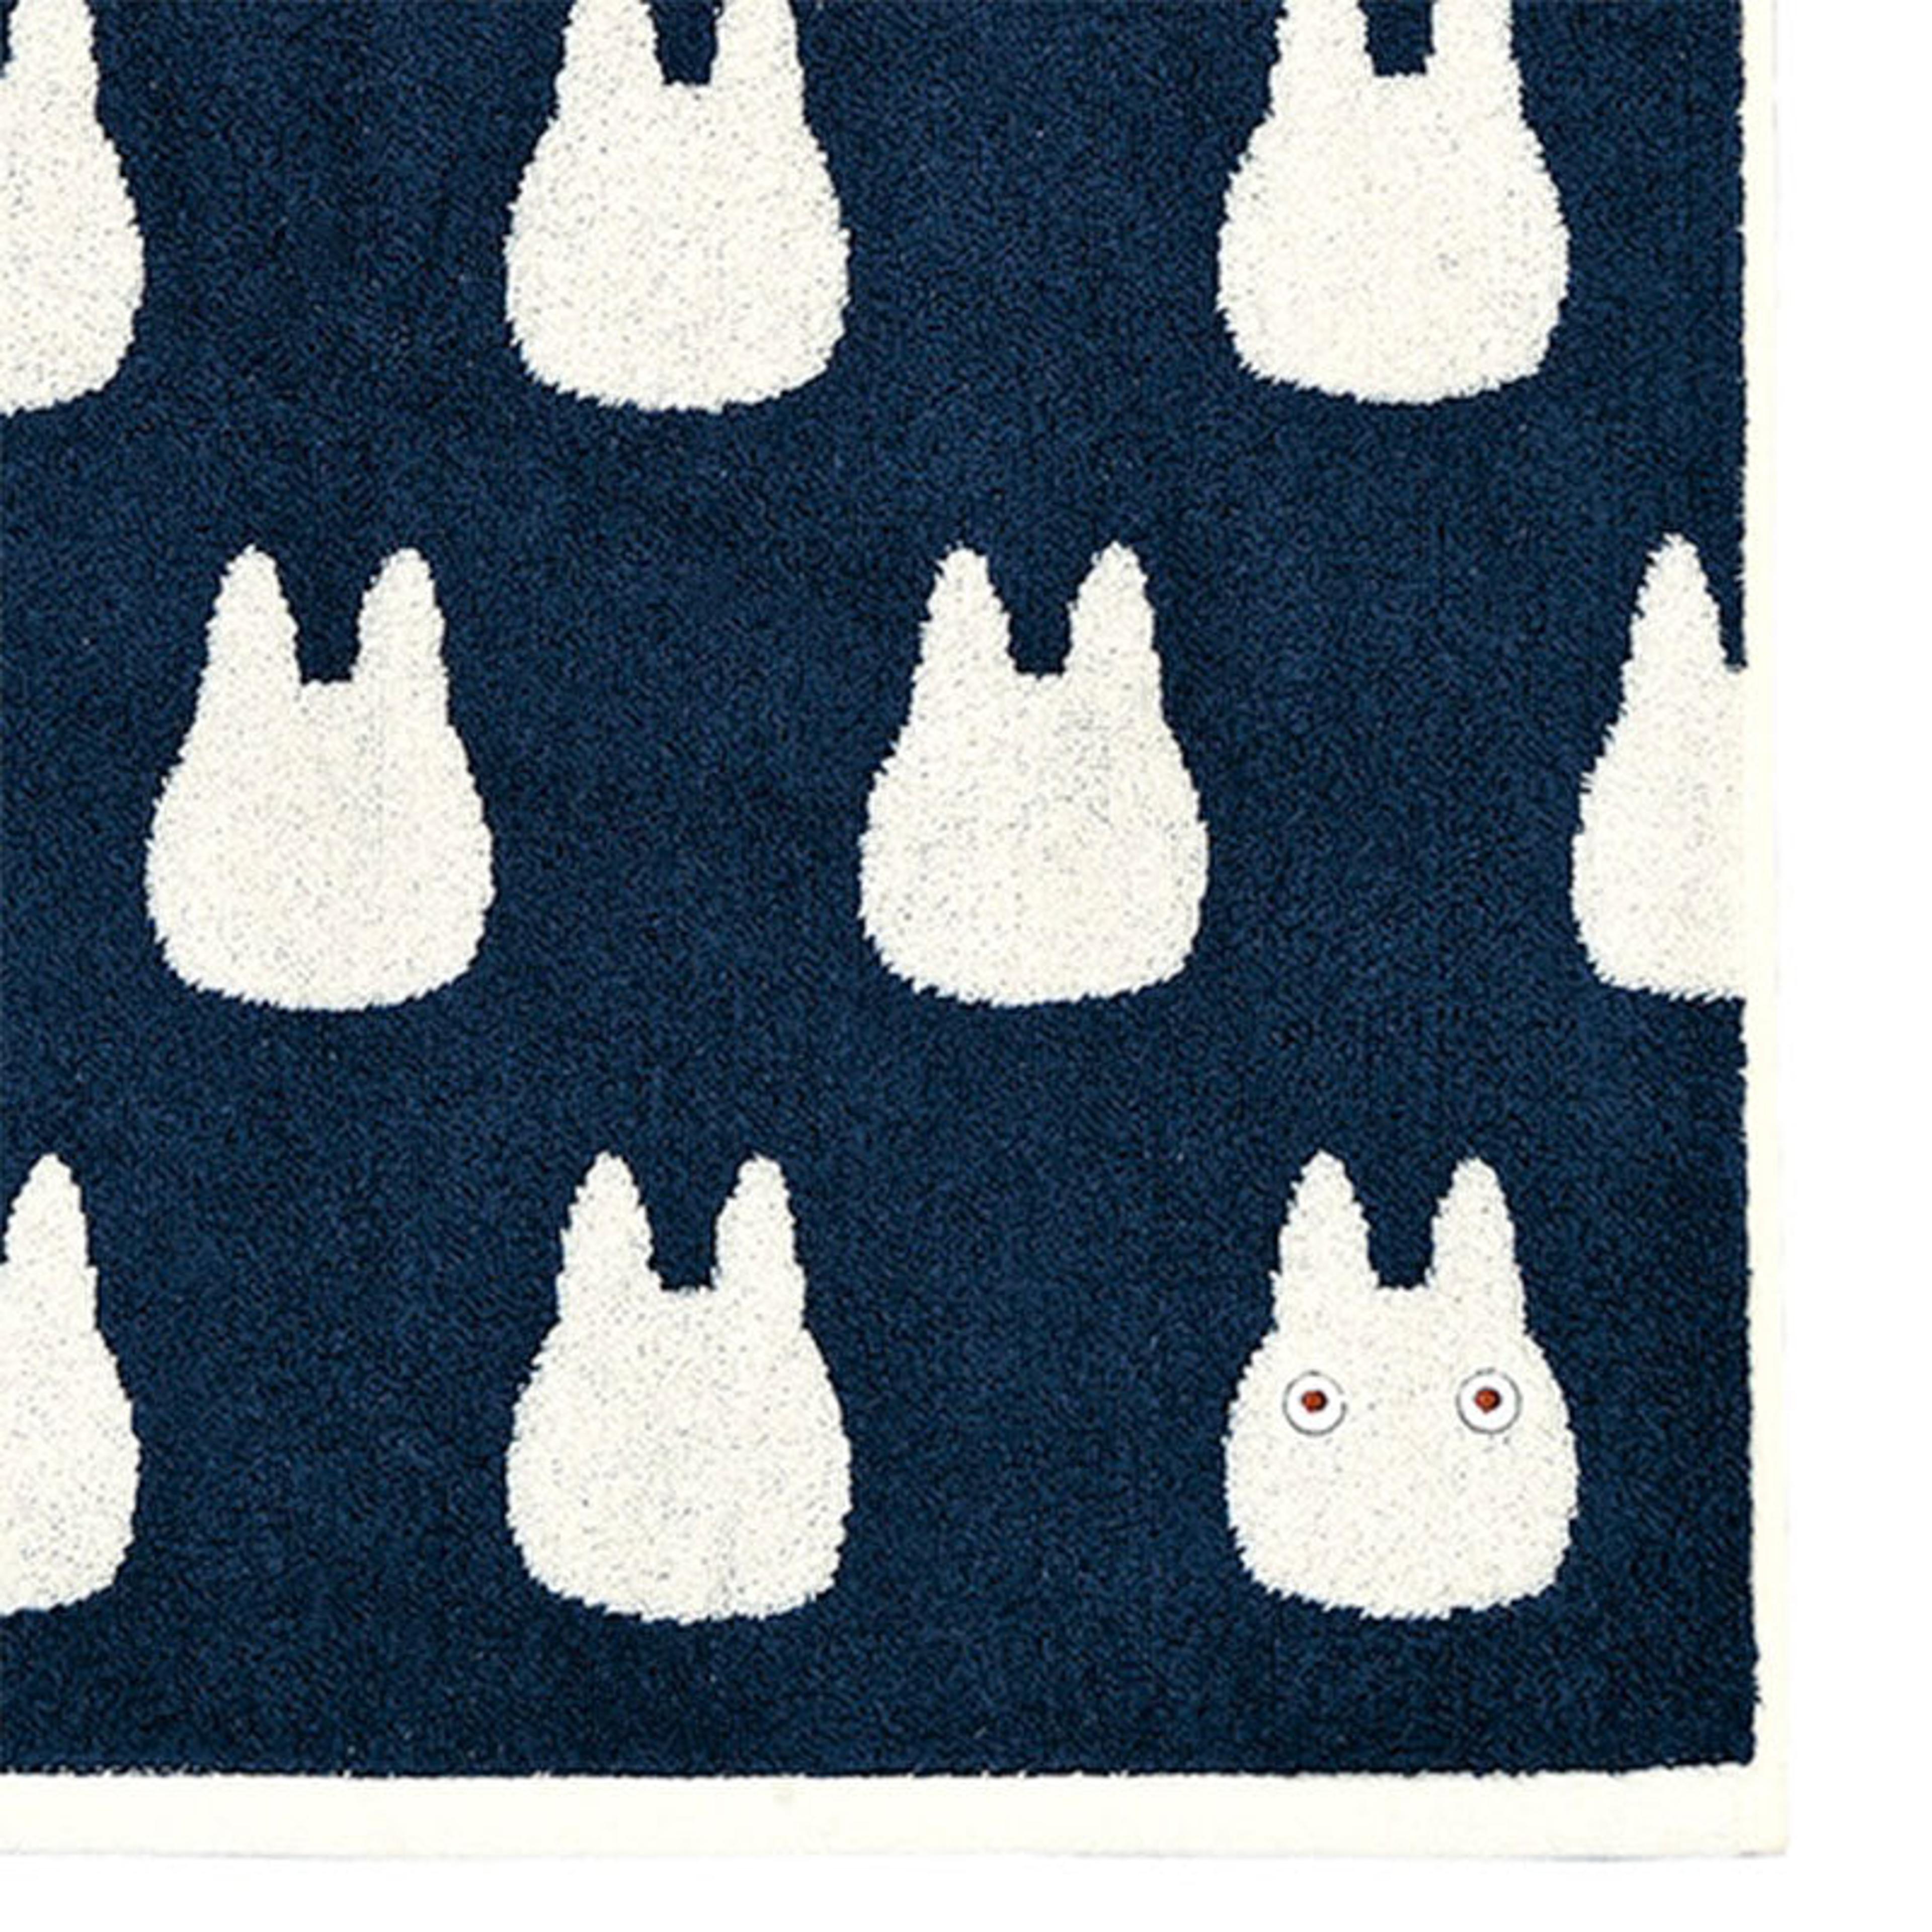 Alternate View 1 of My Neighbor Totoro White Chibi Totoro Face Towel